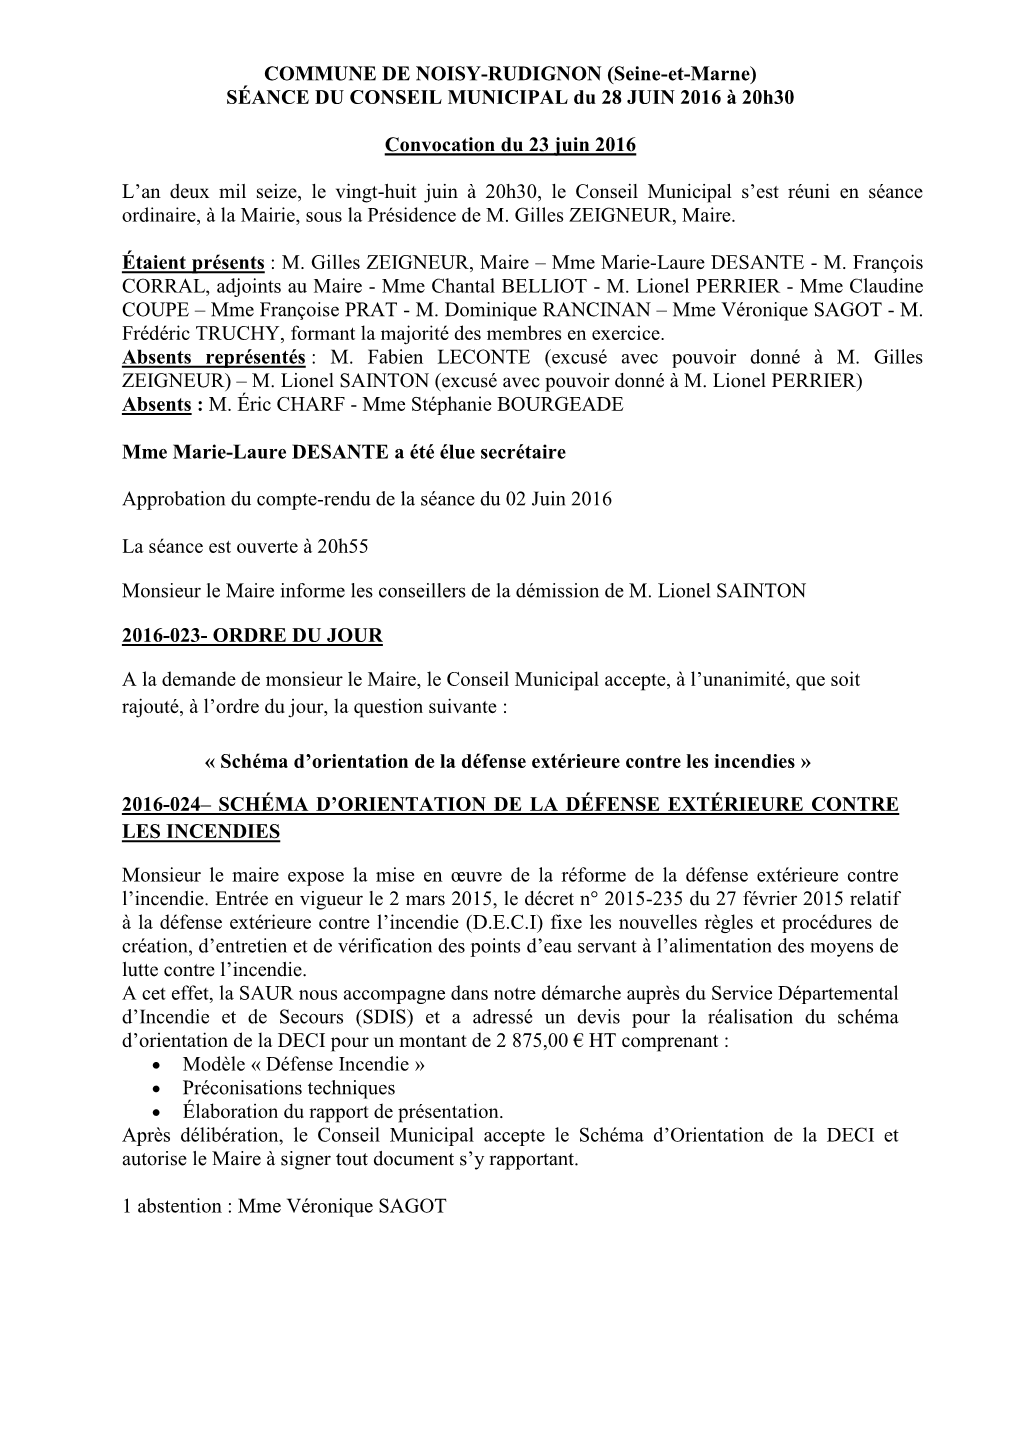 COMMUNE DE NOISY-RUDIGNON (Seine-Et-Marne) SÉANCE DU CONSEIL MUNICIPAL Du 28 JUIN 2016 À 20H30